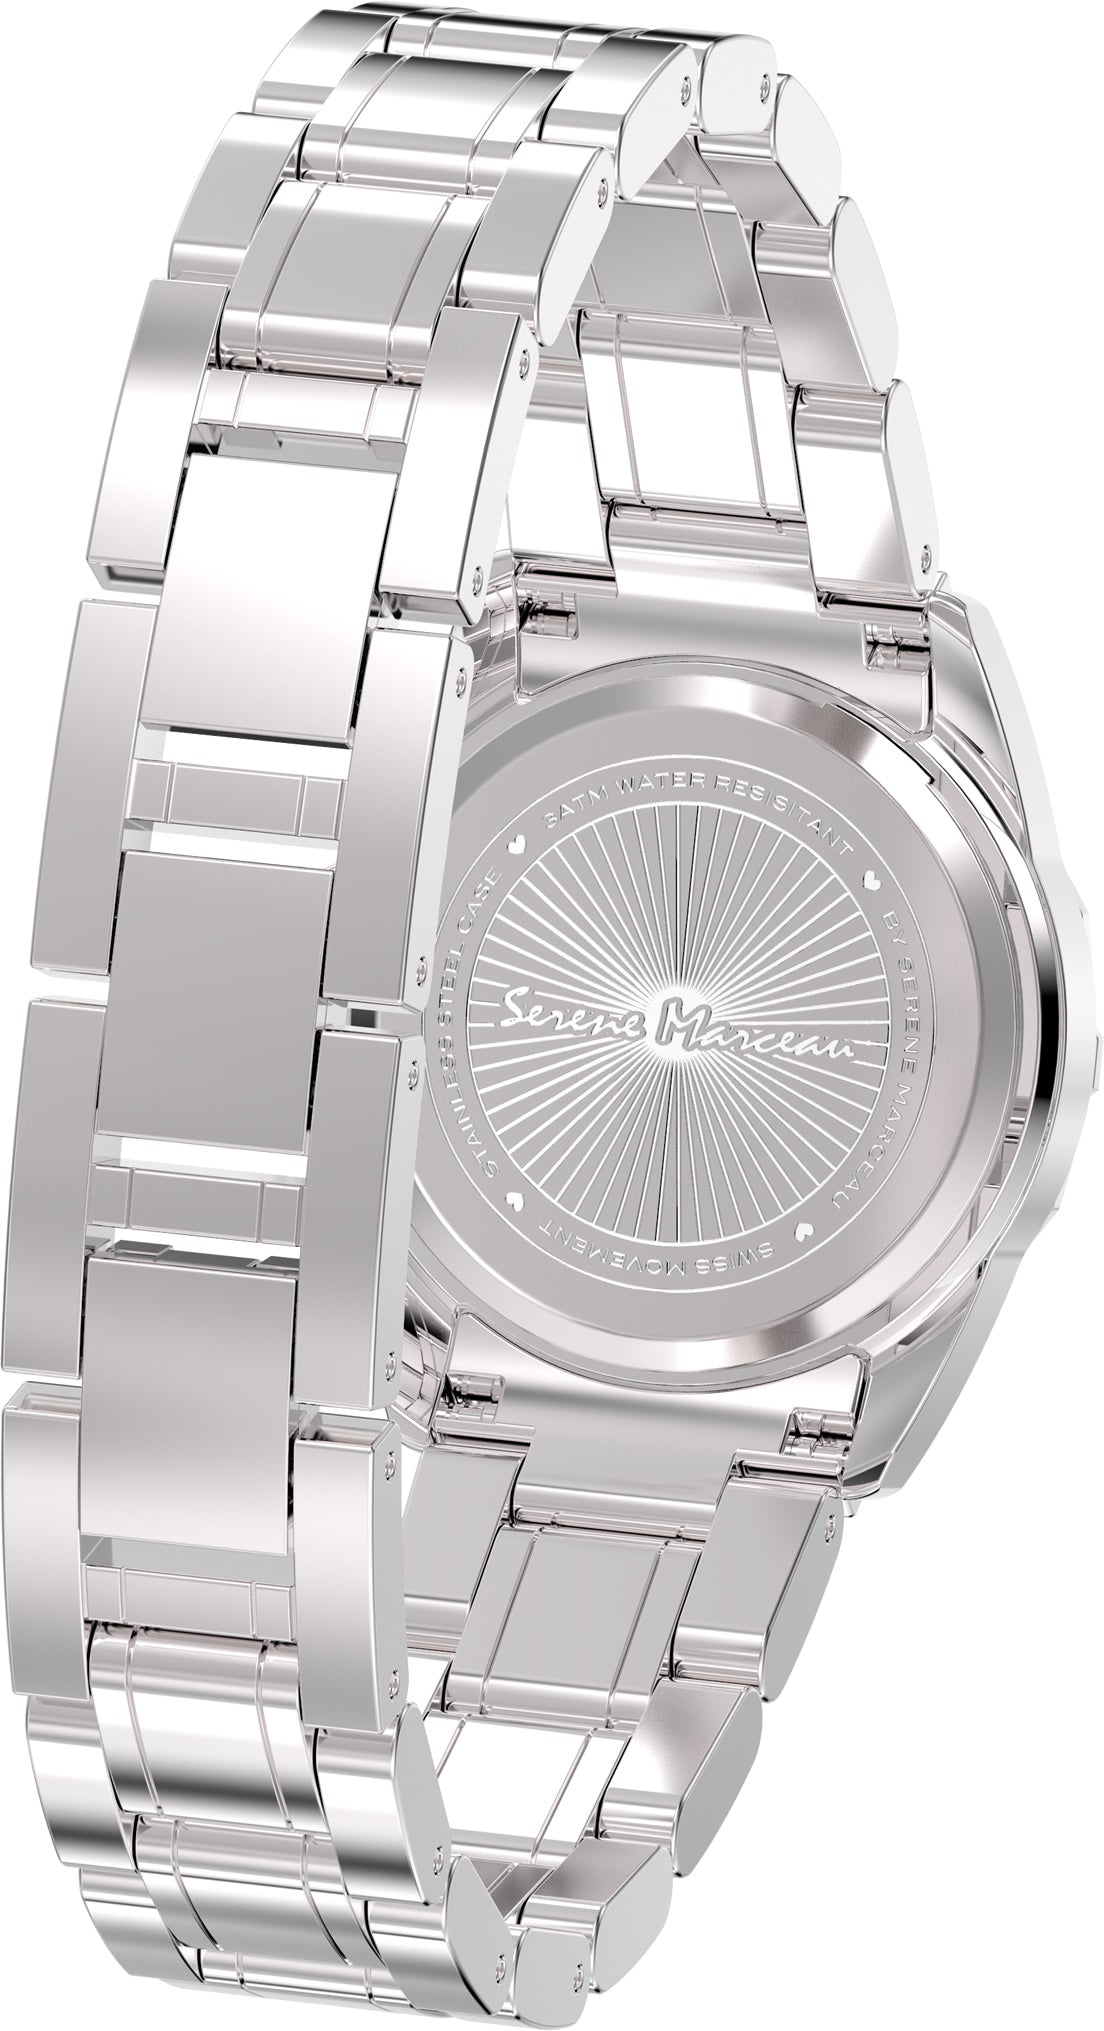 SERENE MARCEAU S010.01 Café de la Paix 29mm White dial Ladies Diamond watch 😉